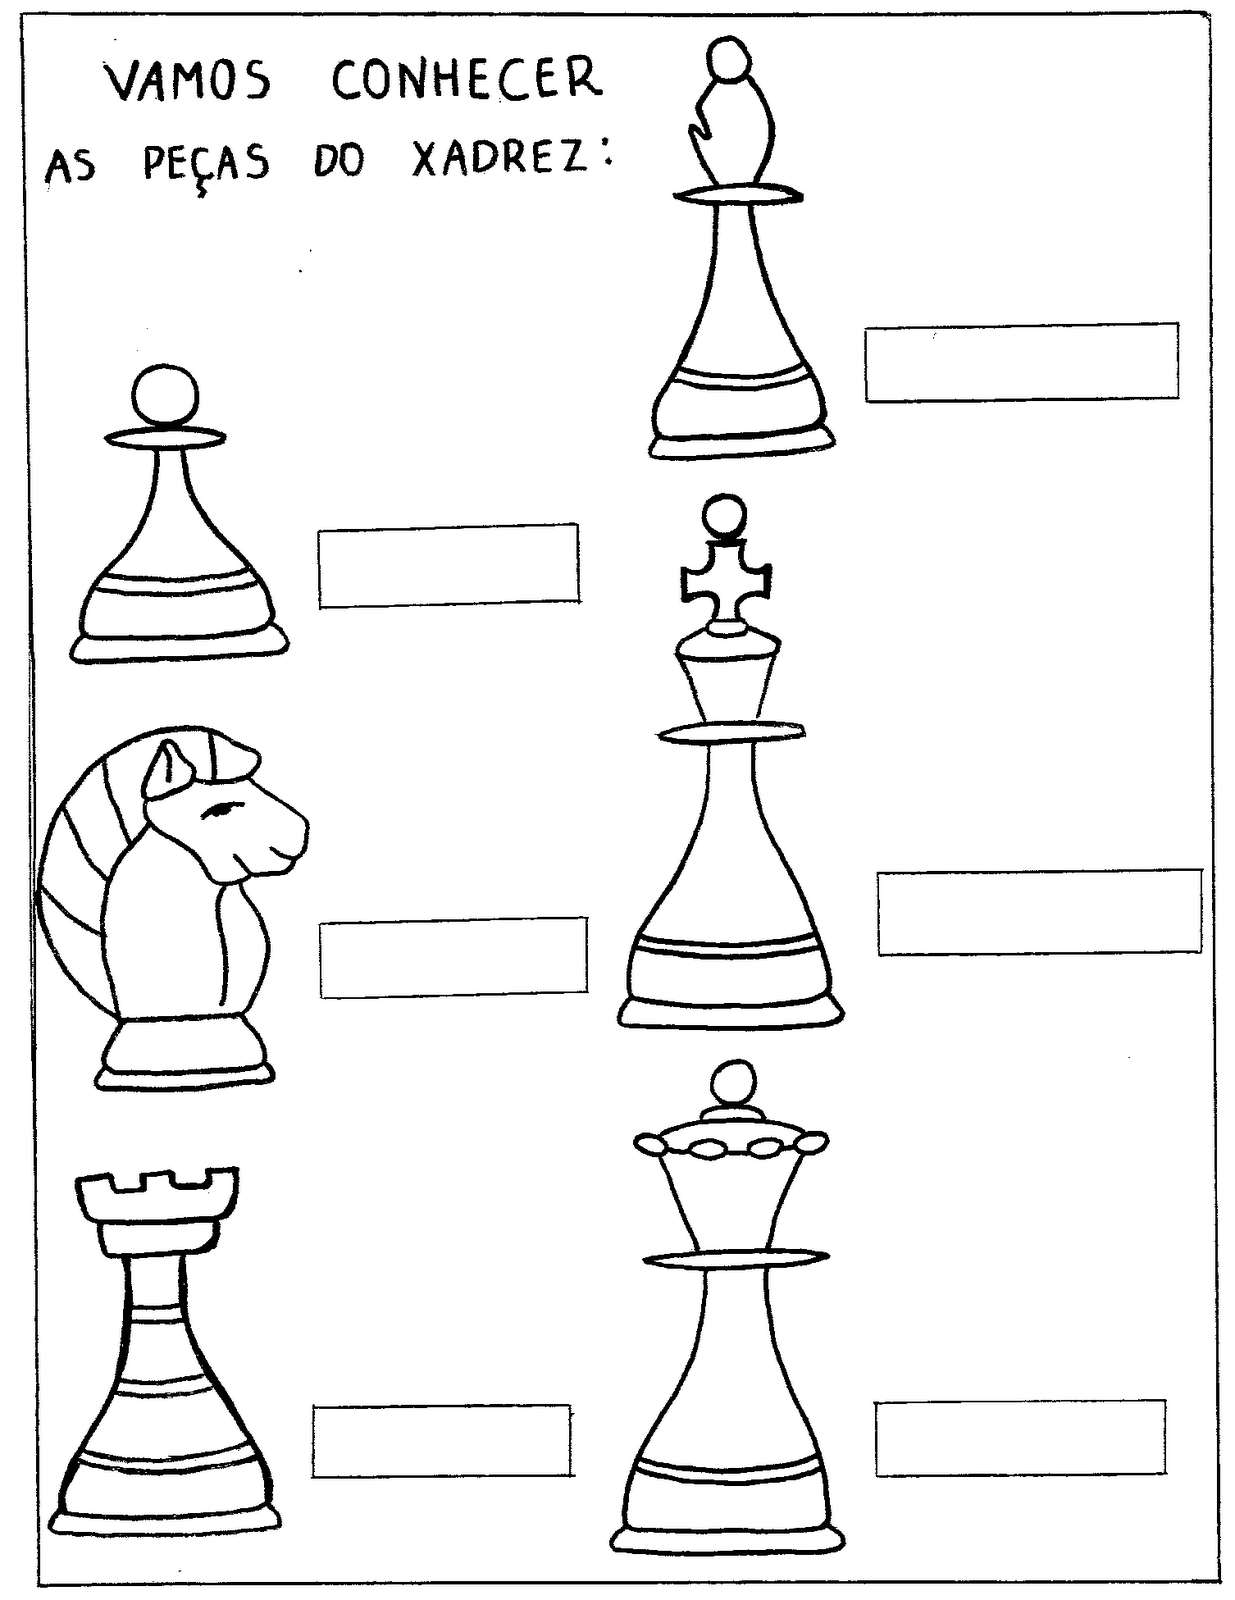 Complete a cruzadinha com os nomes das peças do jogo xadrez!​ 